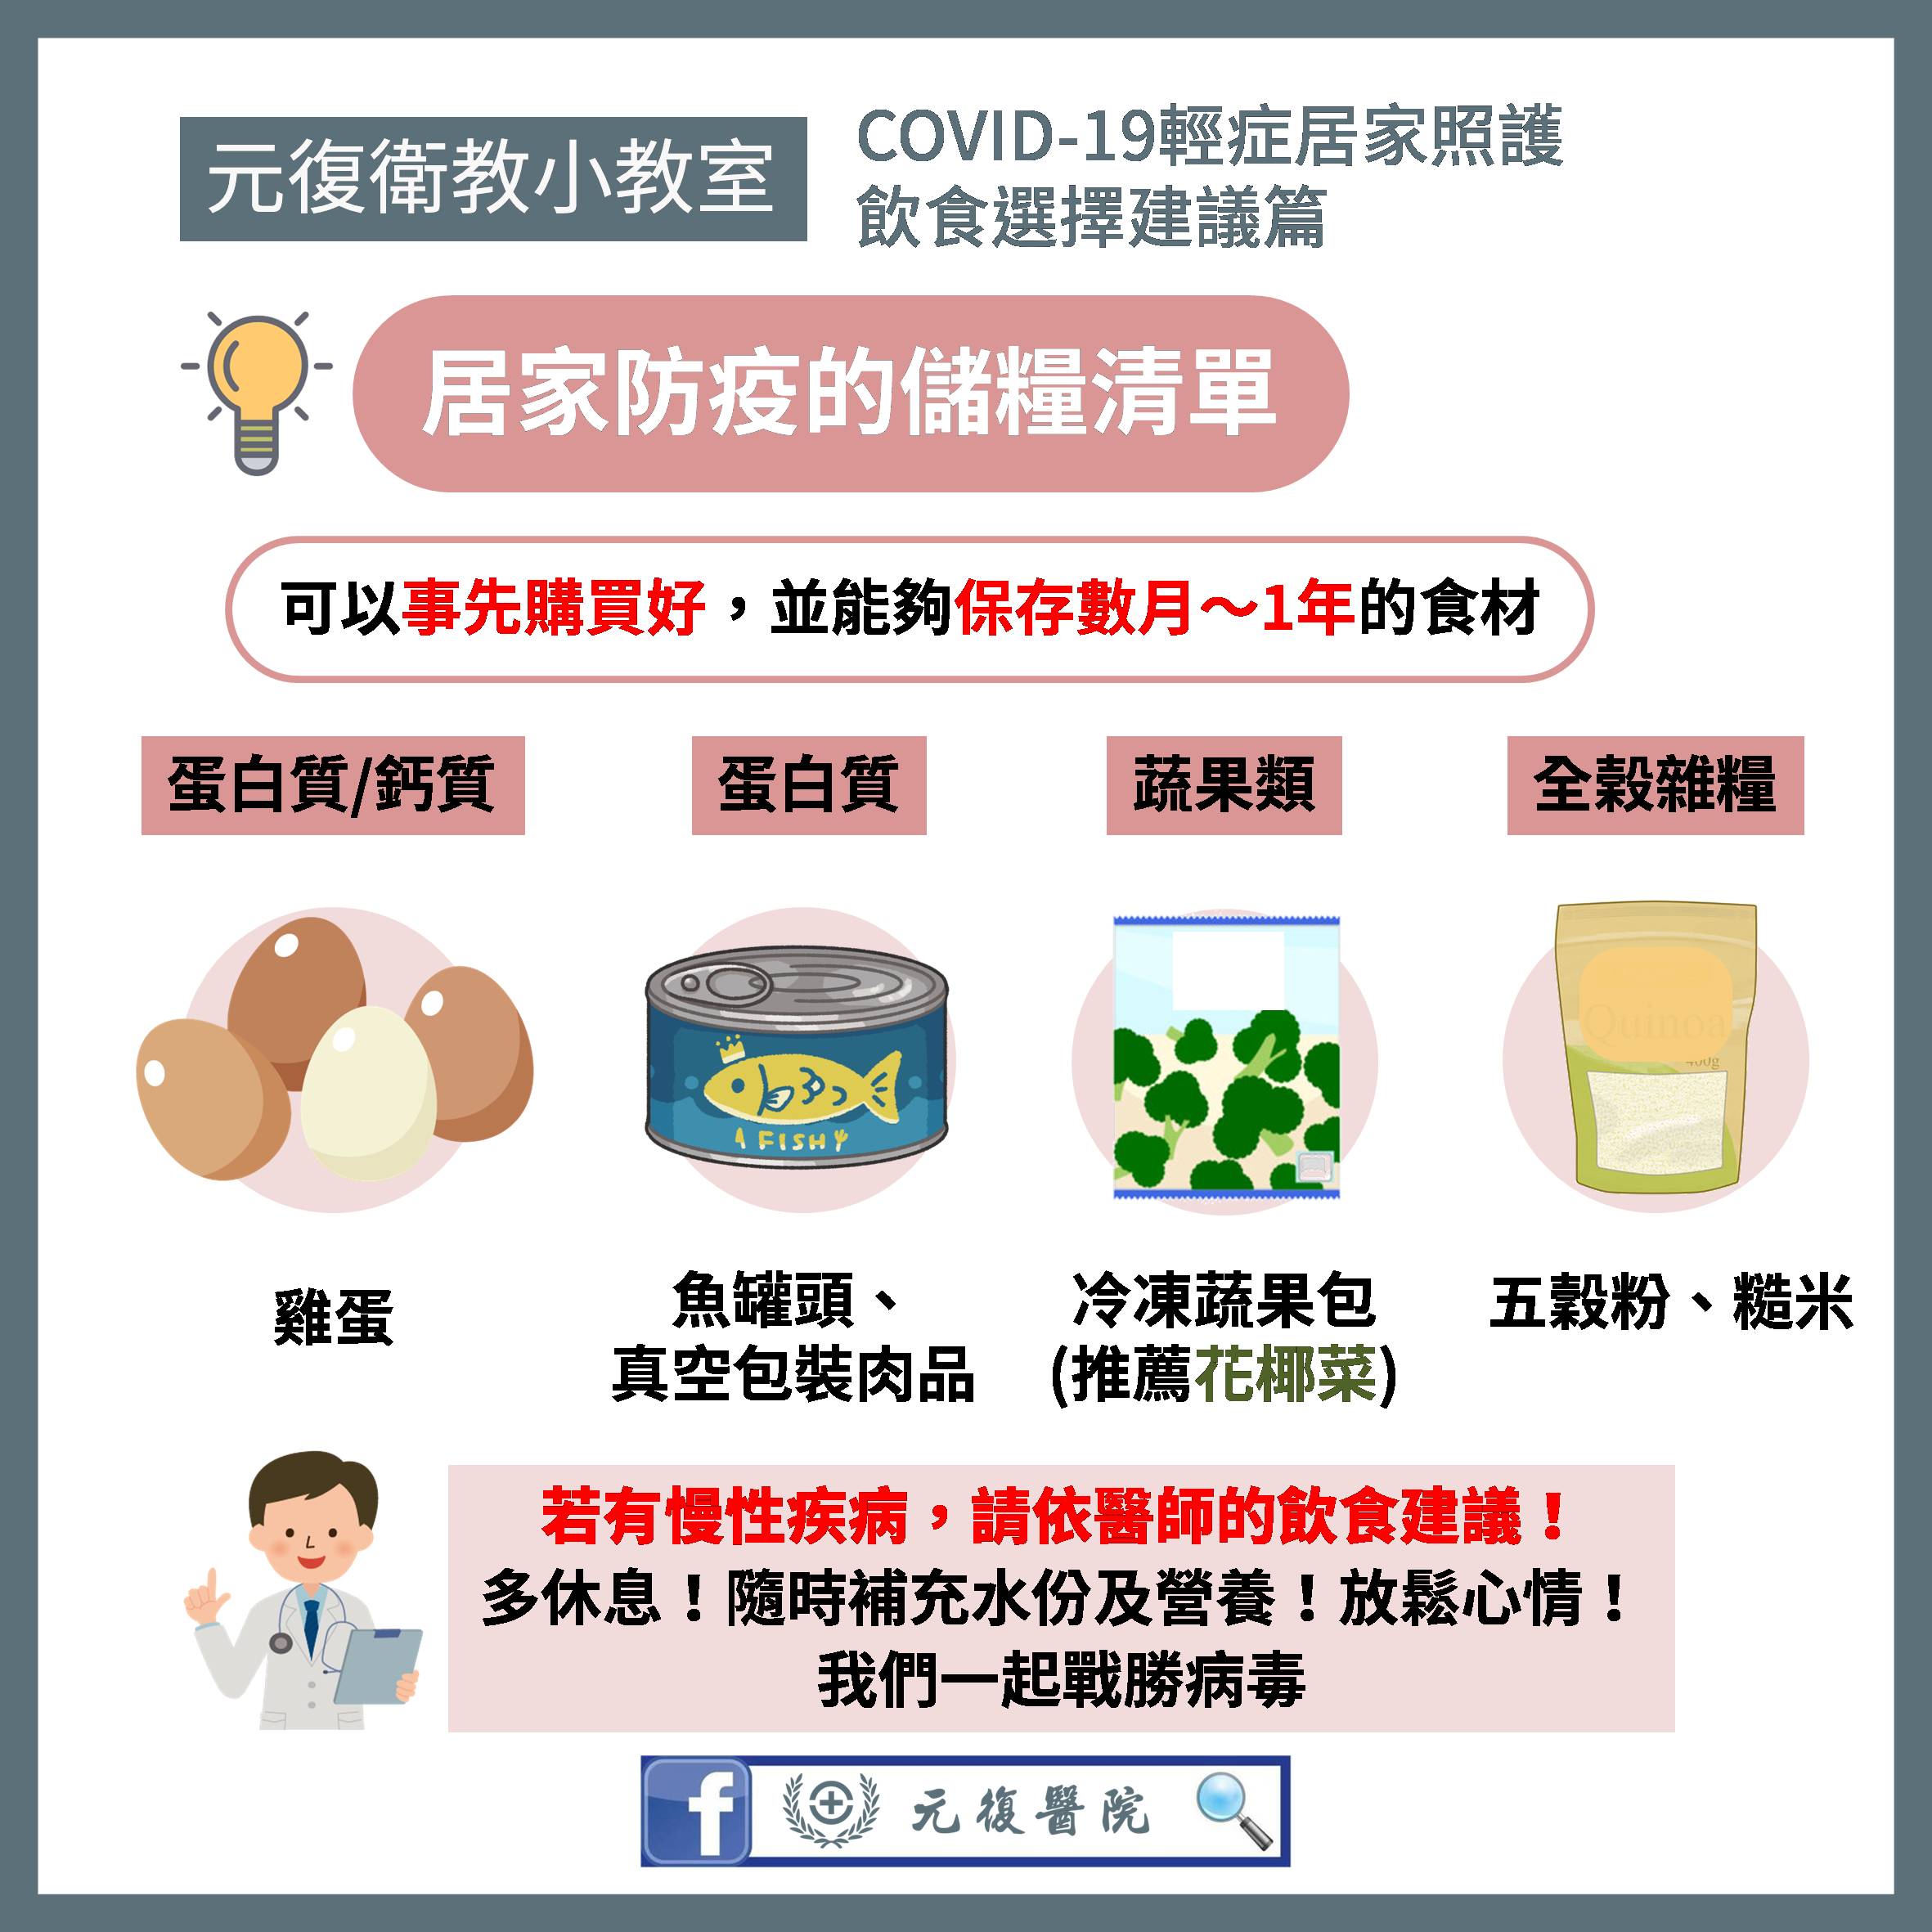 COVID-19輕症 居家照護飲食選擇建議篇